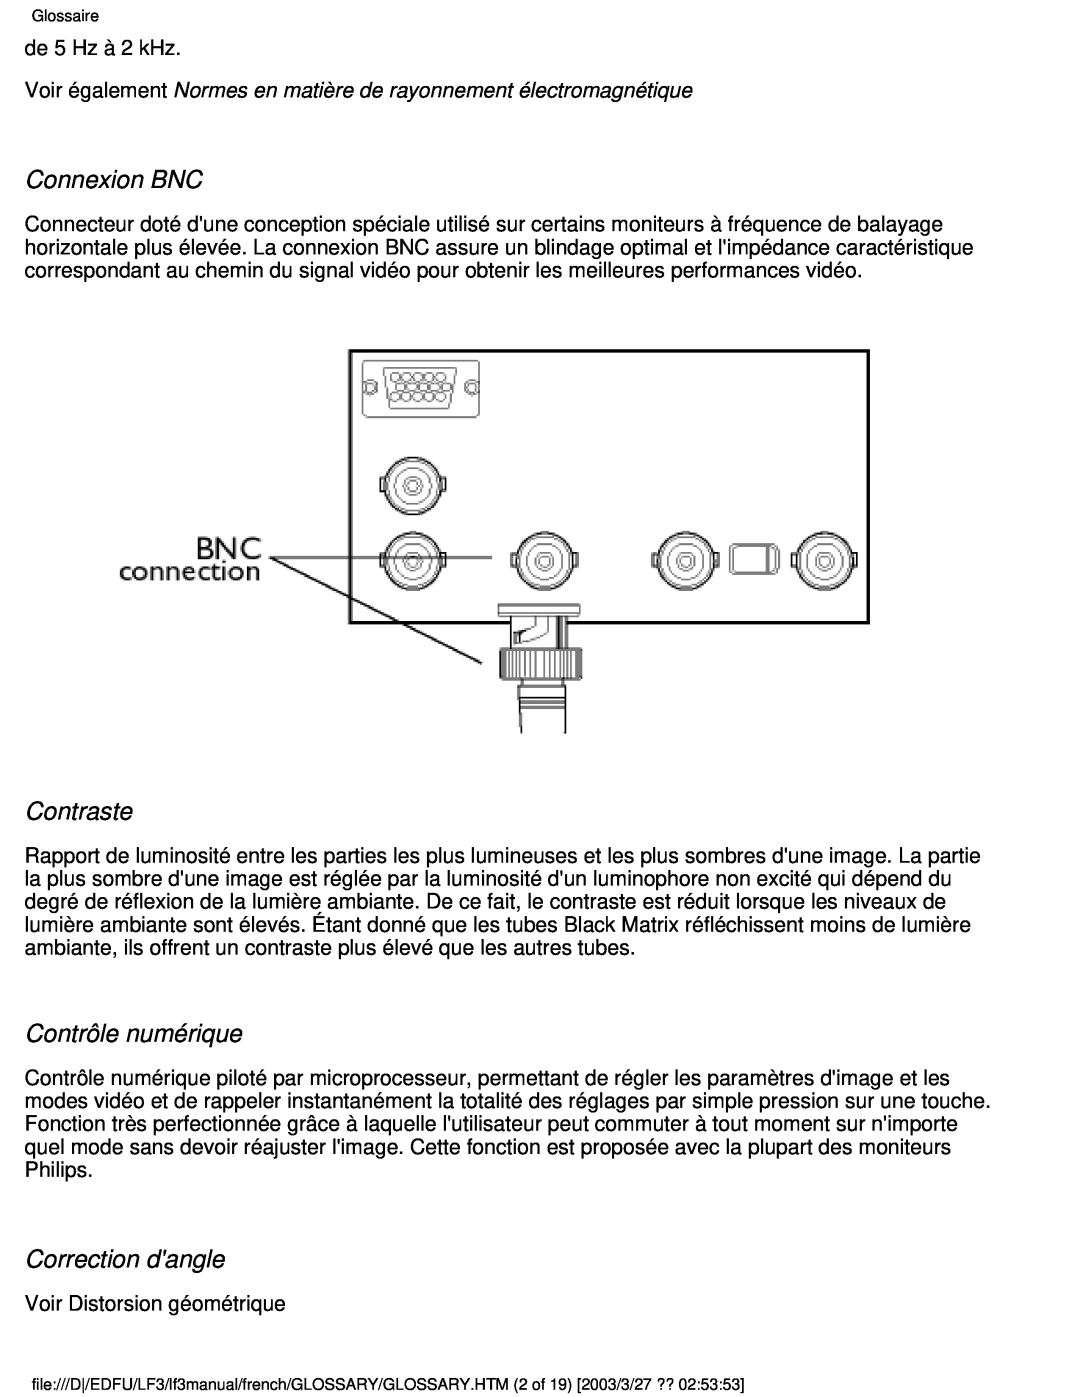 Philips 105E user manual Connexion BNC, Contraste, Contrôle numérique, Correction dangle 